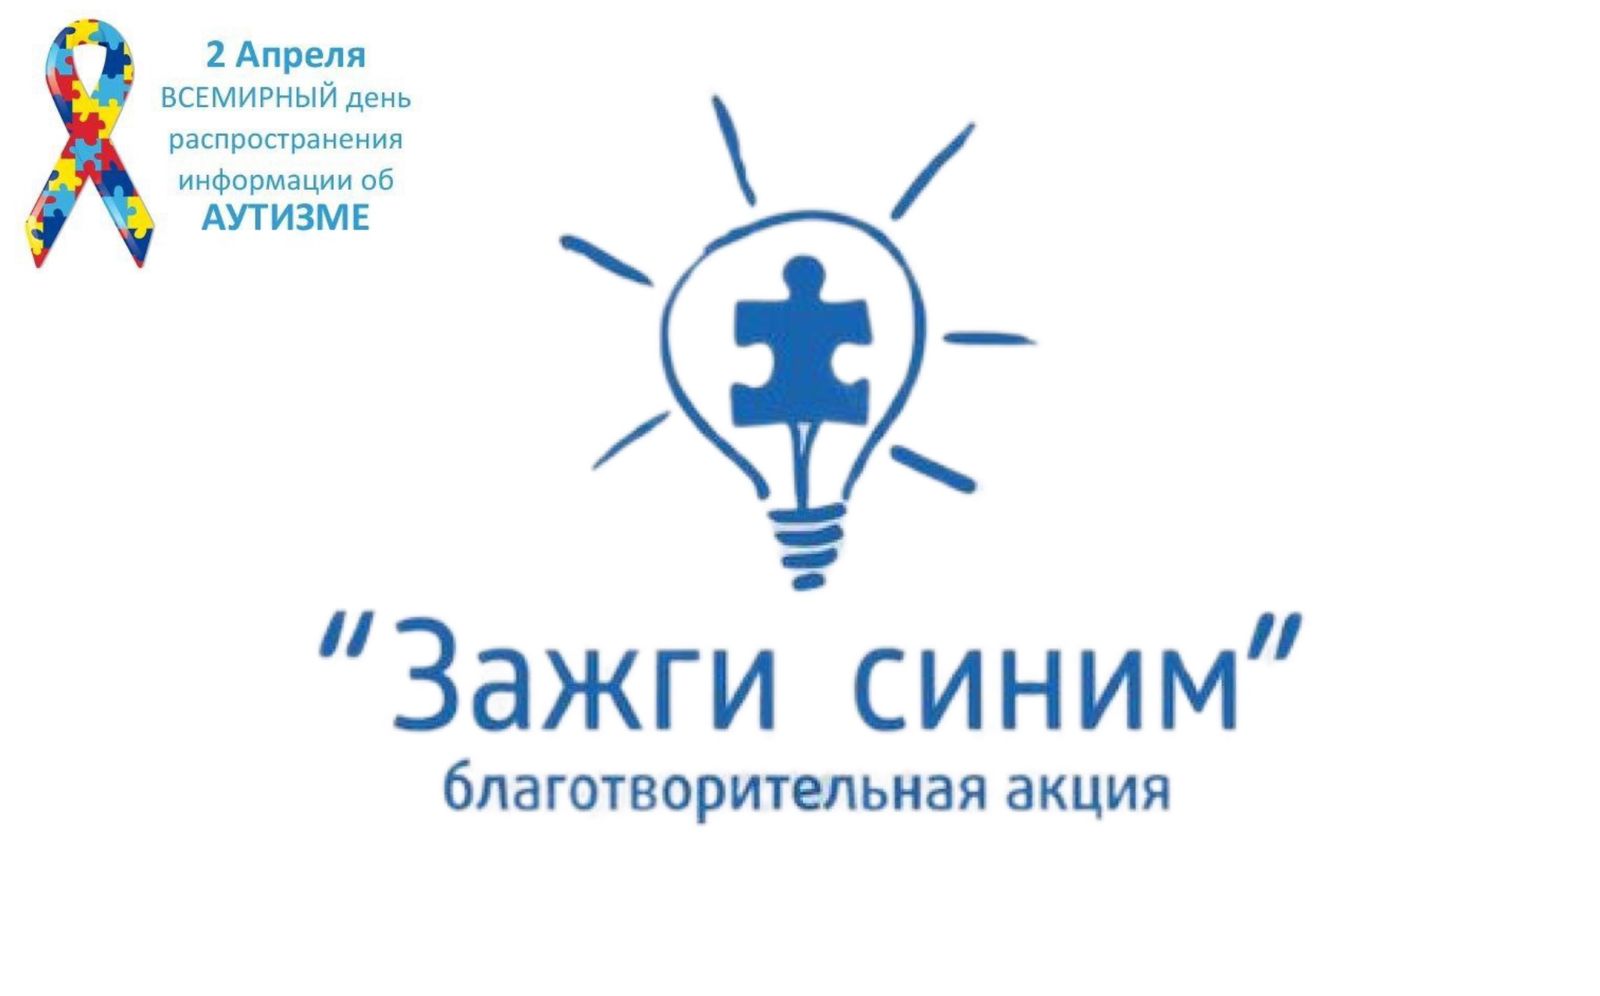 Благотворительная акция «Зажги синим» в рамках Всемирного дня распространения информации об аутизме